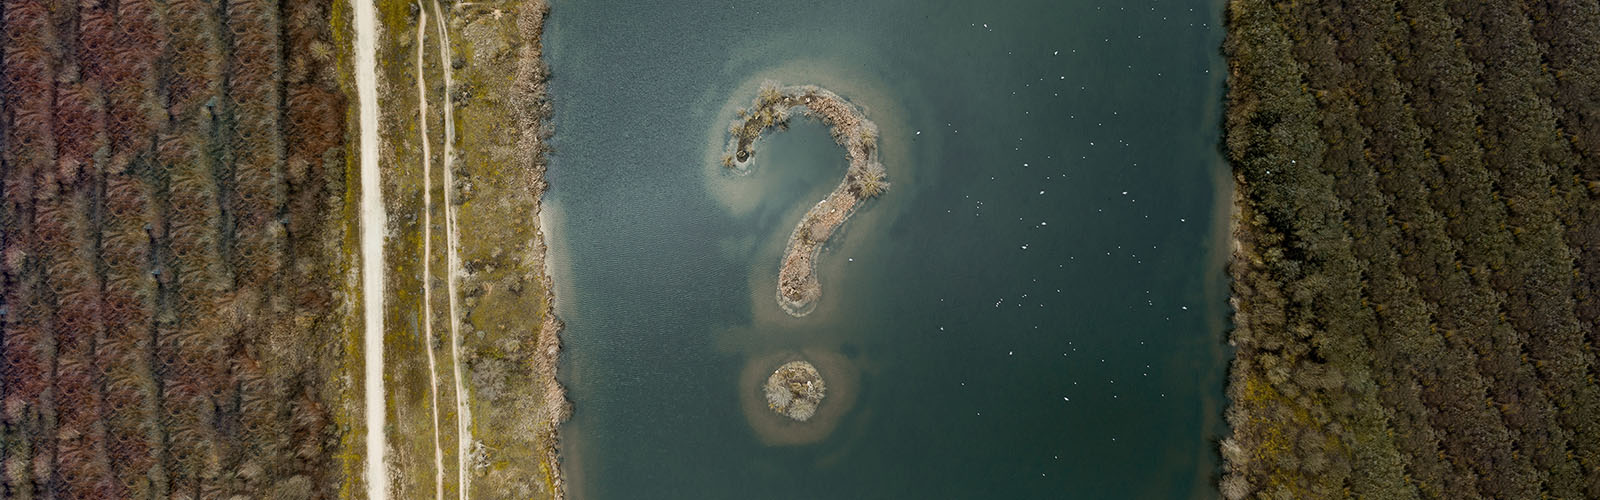 Island Shaped like a question mark